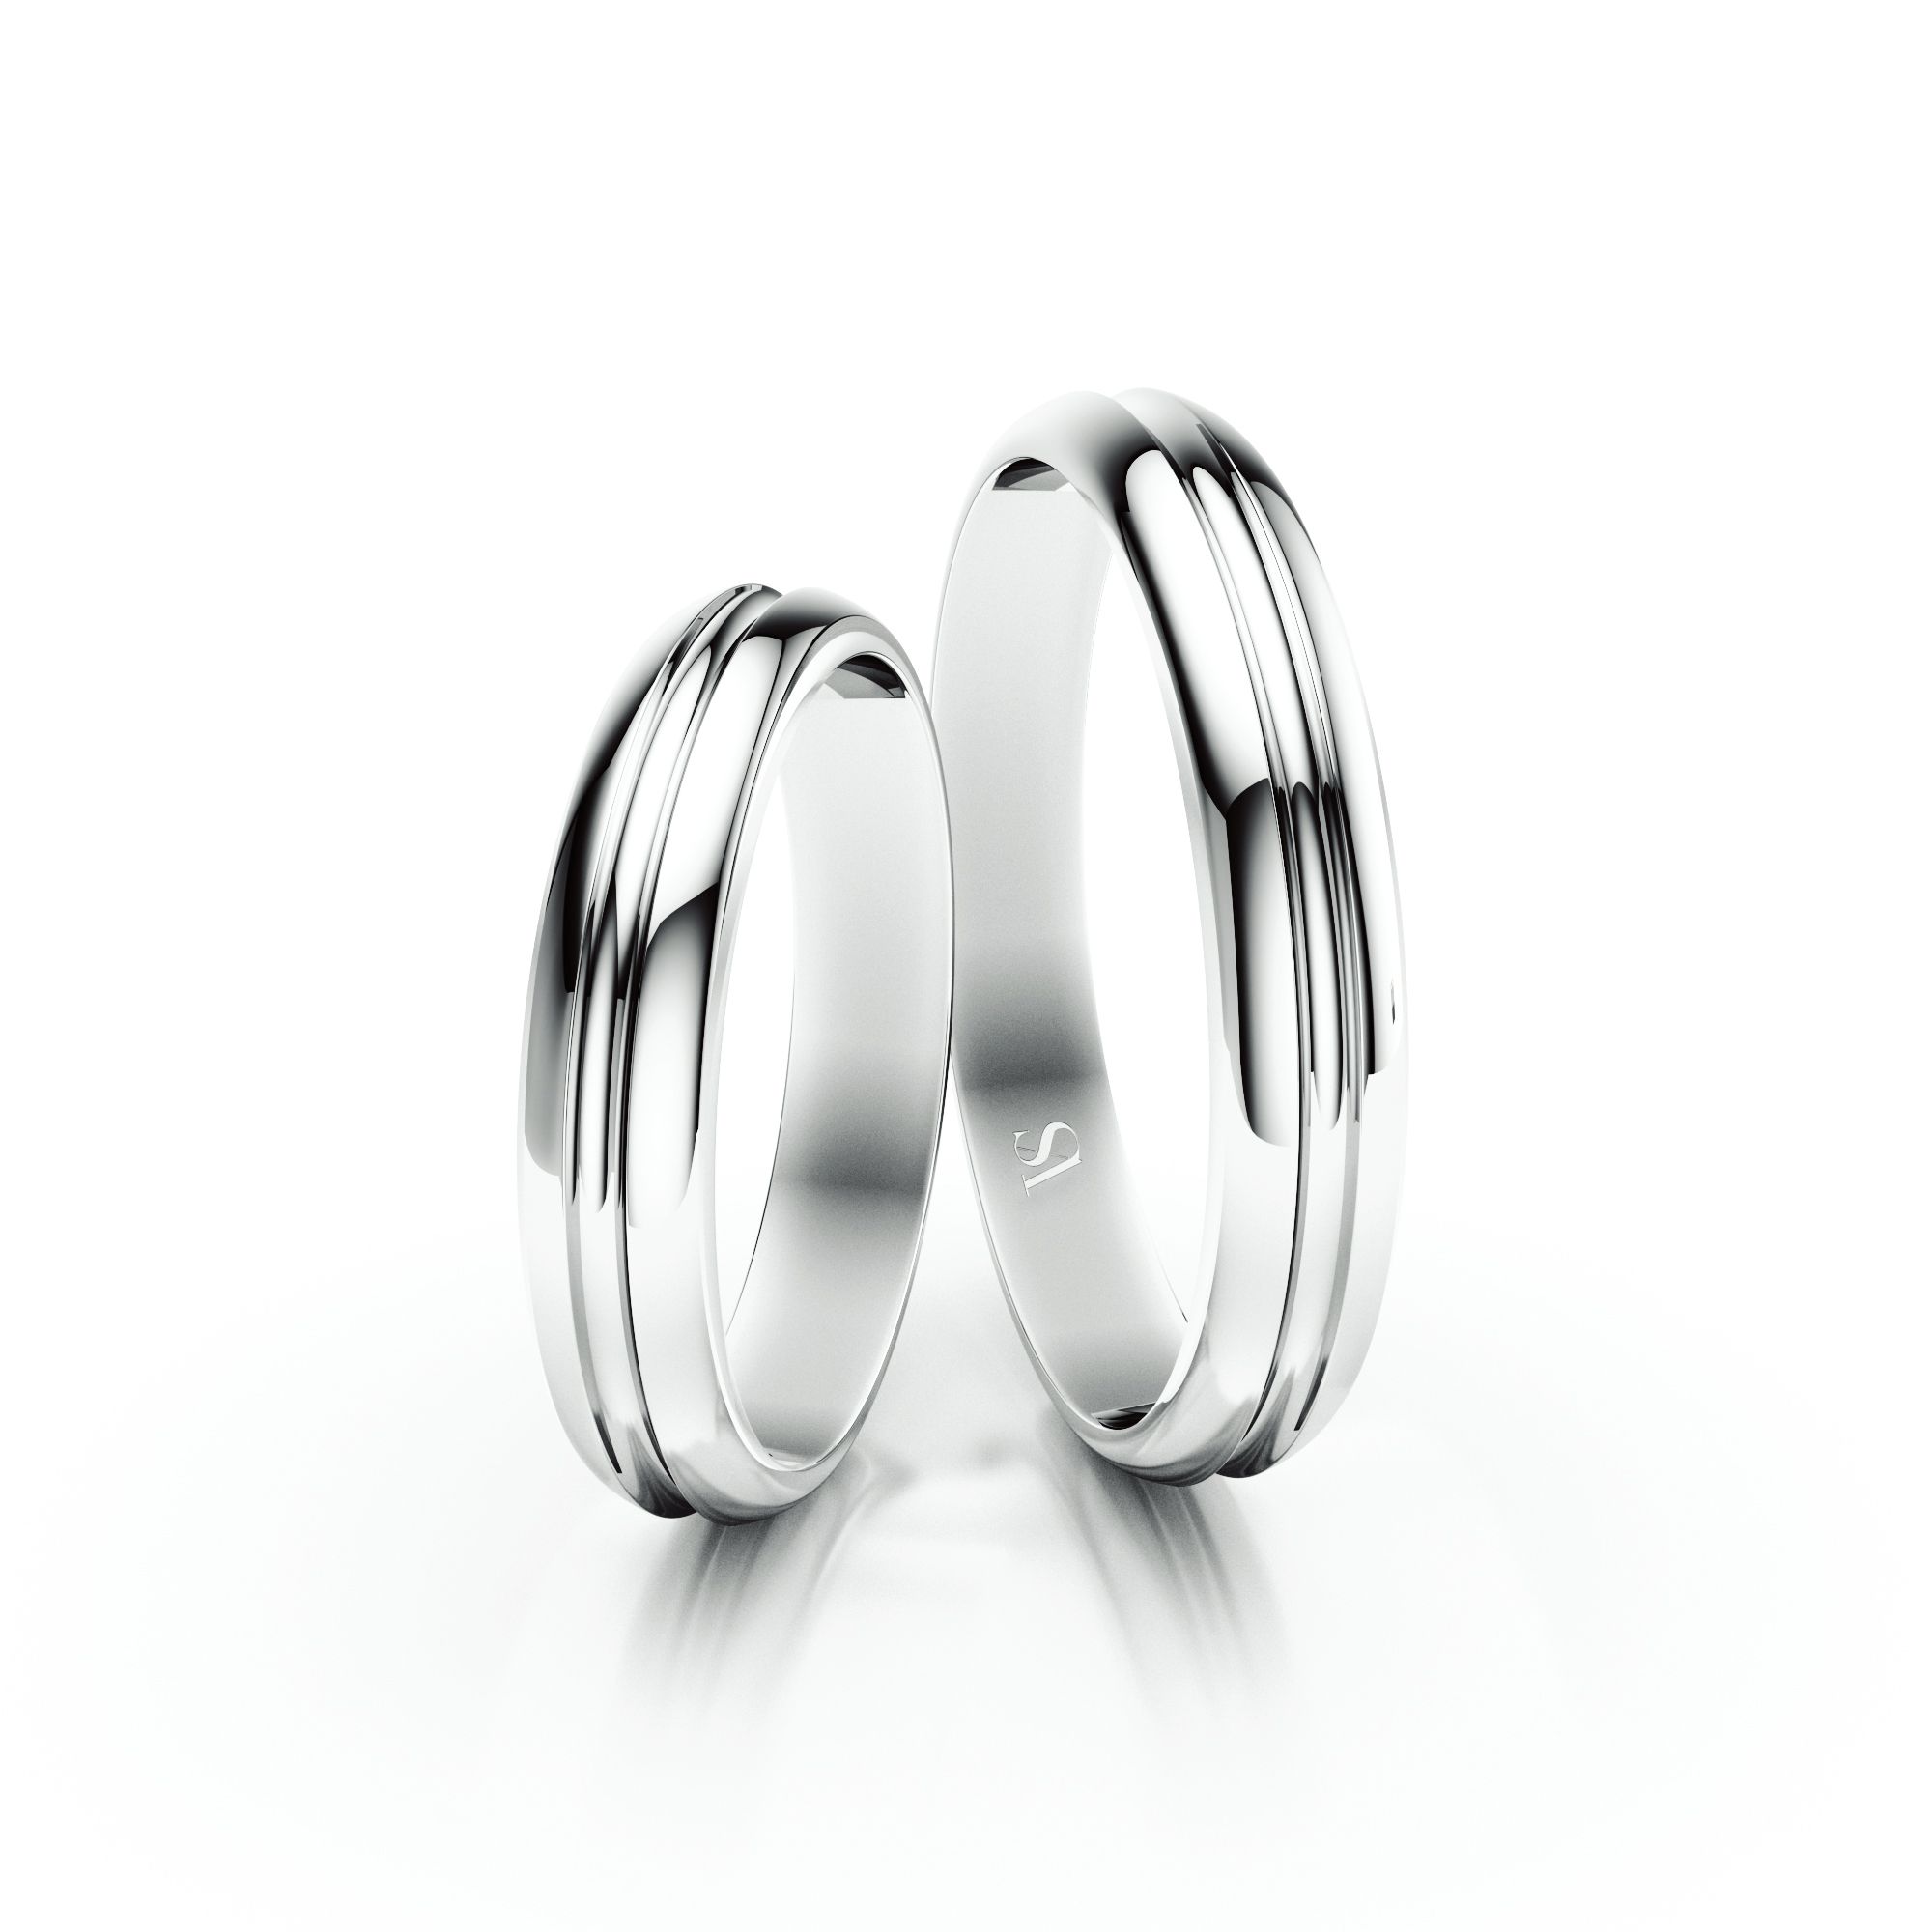 Snubní prsteny VS014 – bílé zlato